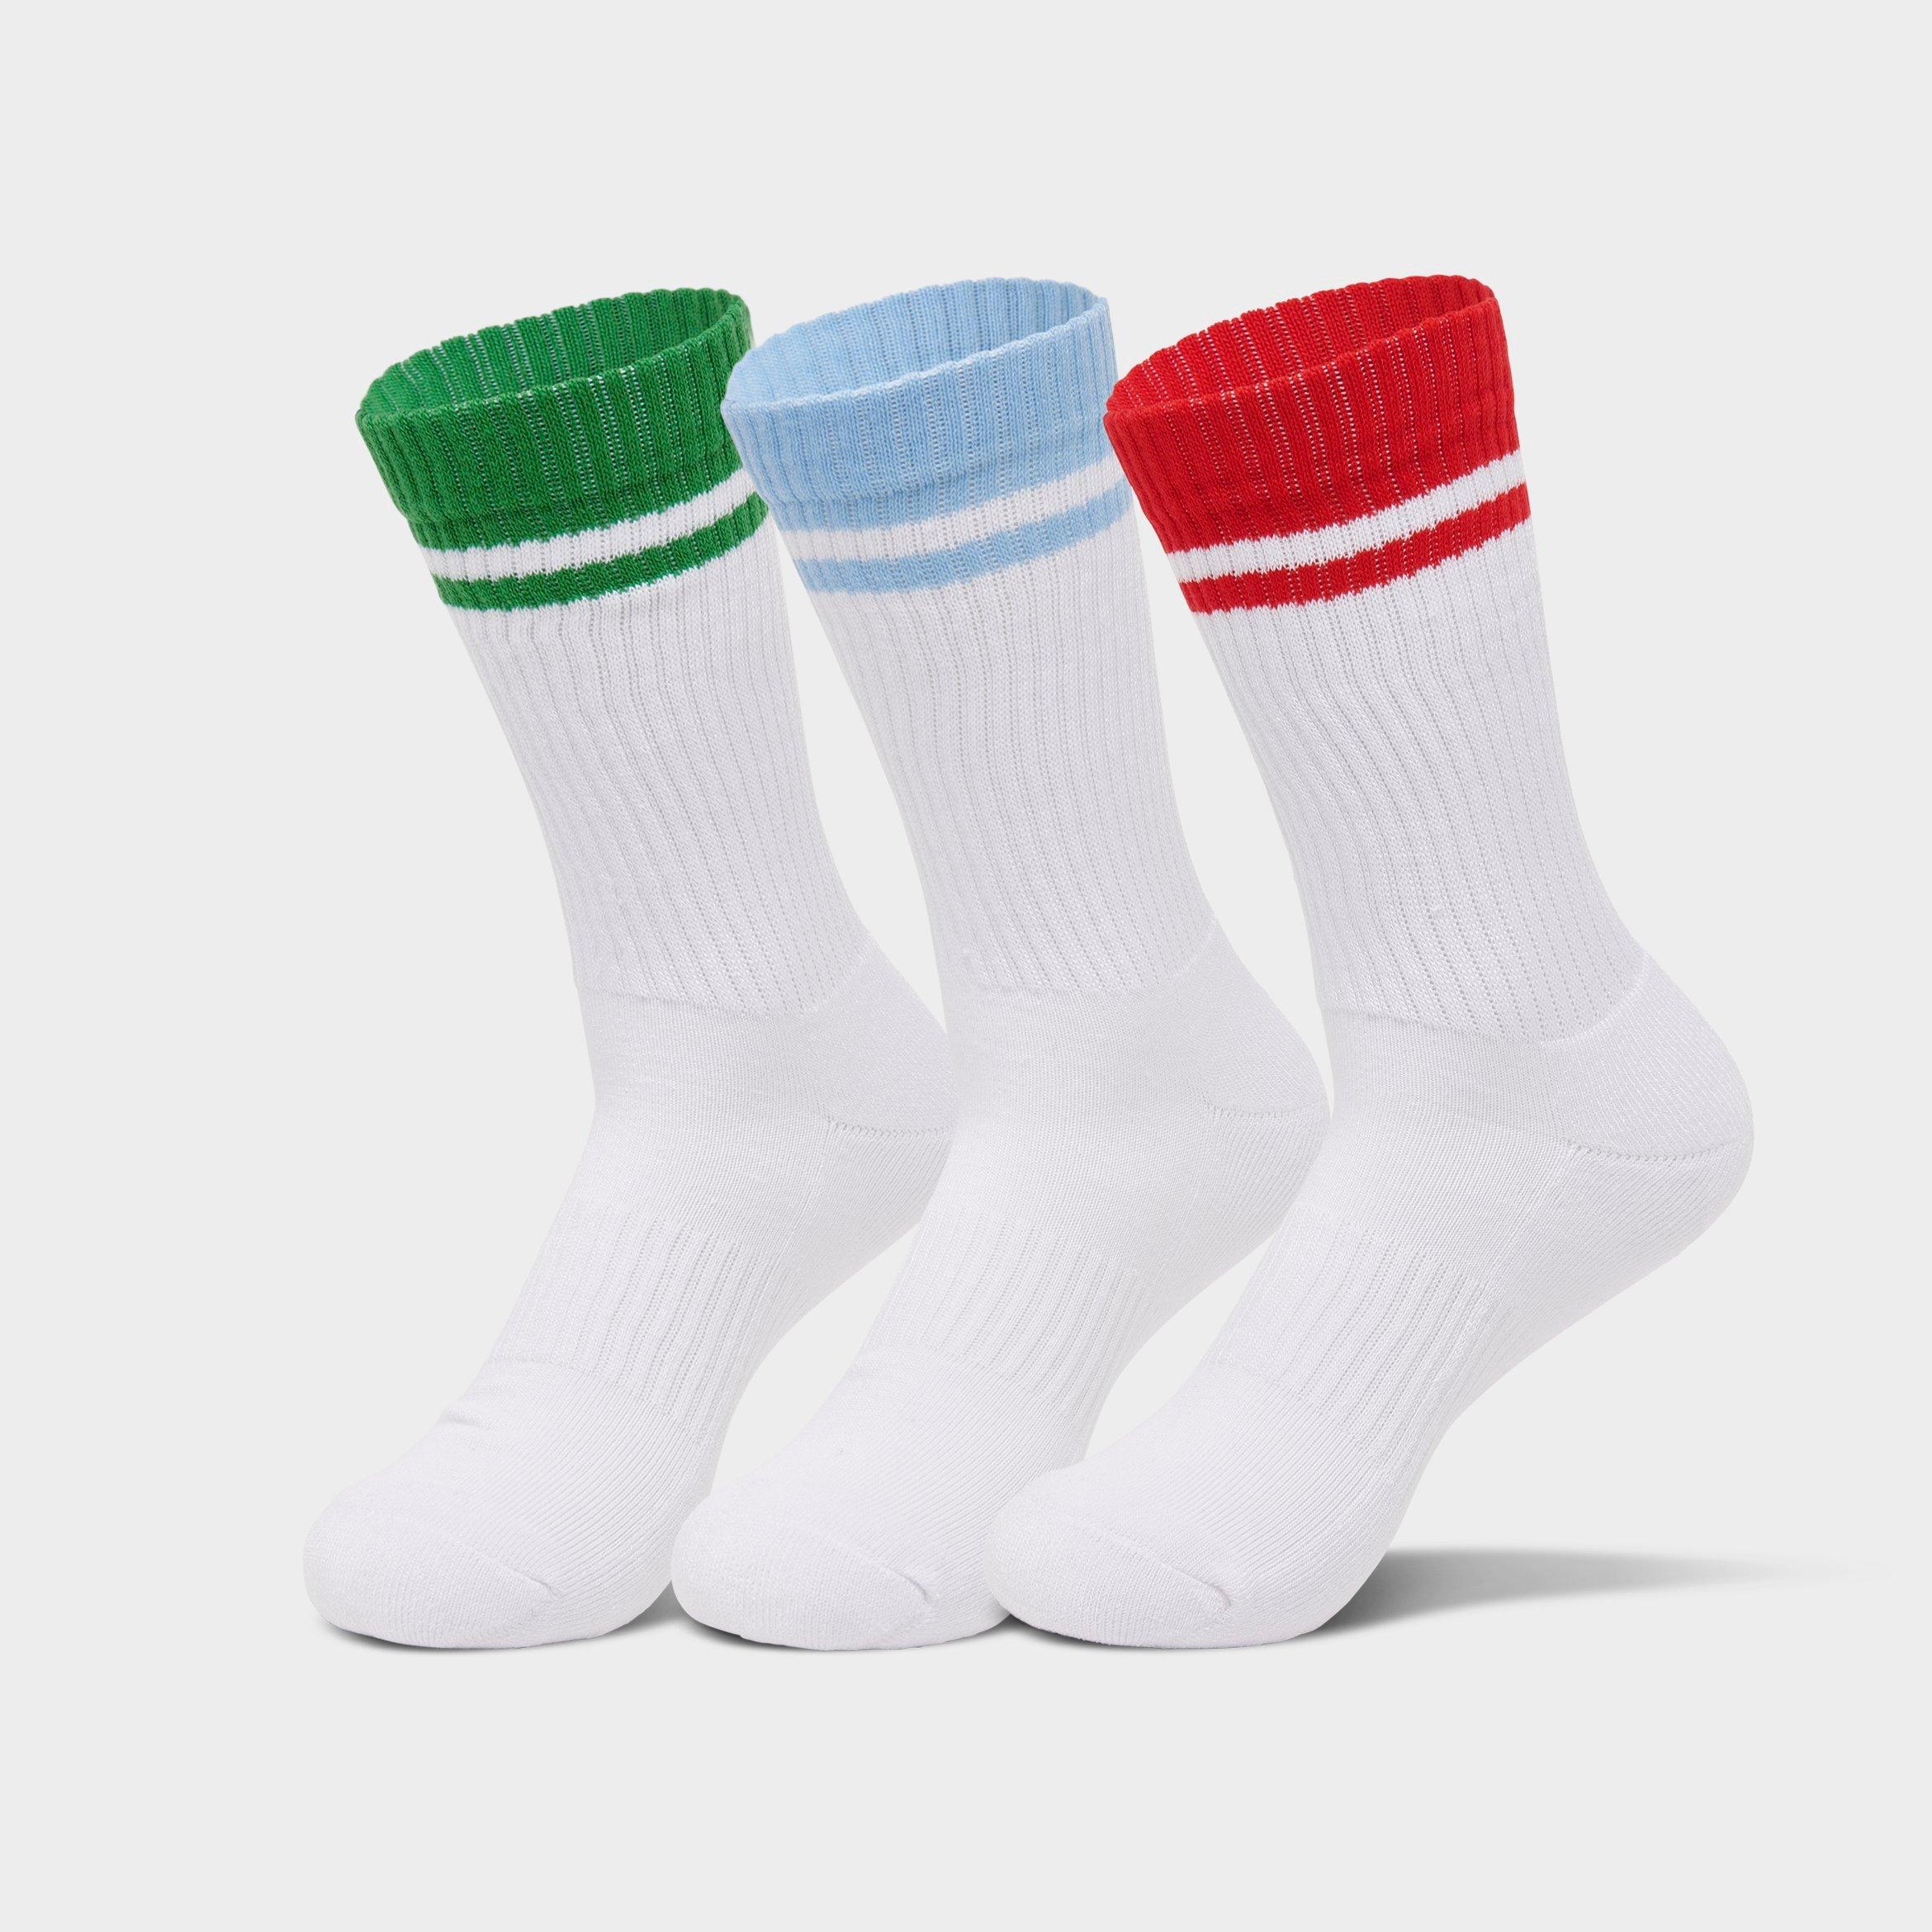 Sof Sole Varsity Stripe Crew Socks (3-pack) In Multicolor